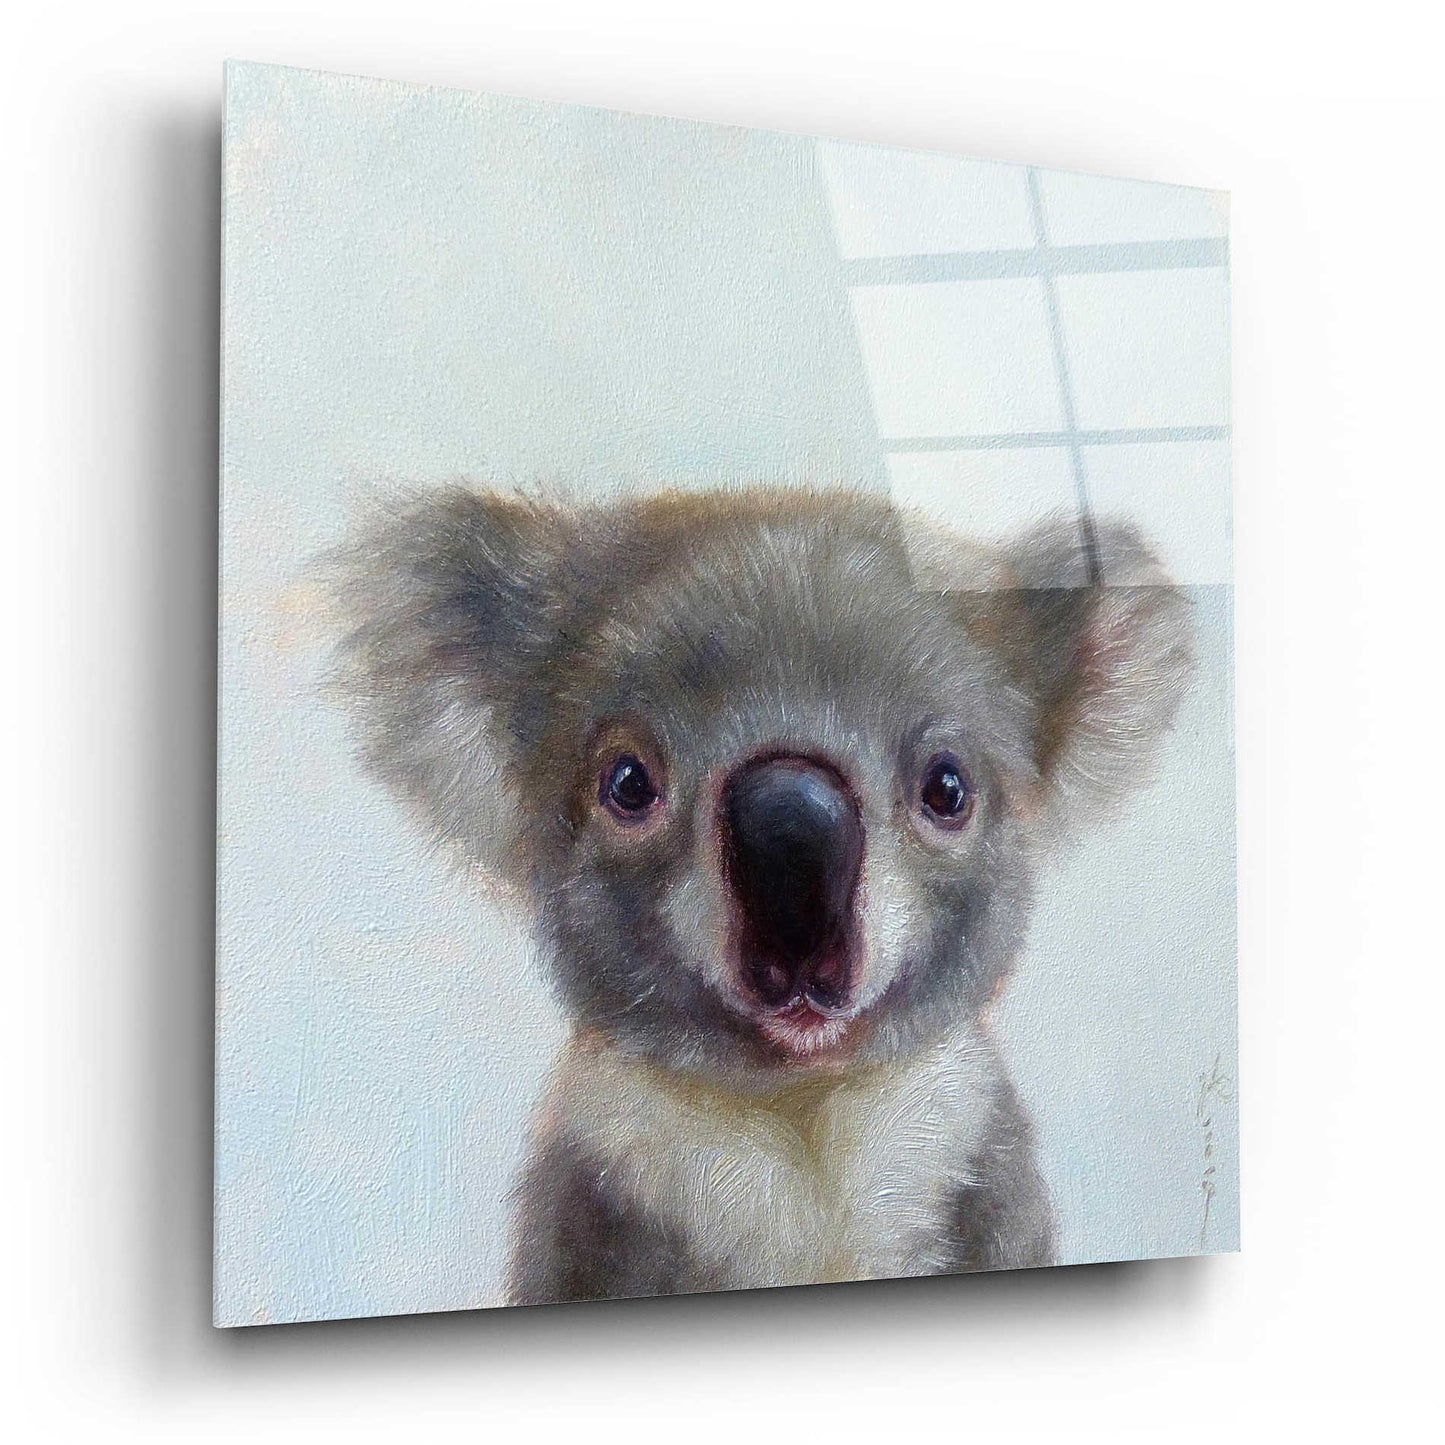 Epic Art 'Lil Koala' by Lucia Heffernan, Acrylic Glass Wall Art,12x12